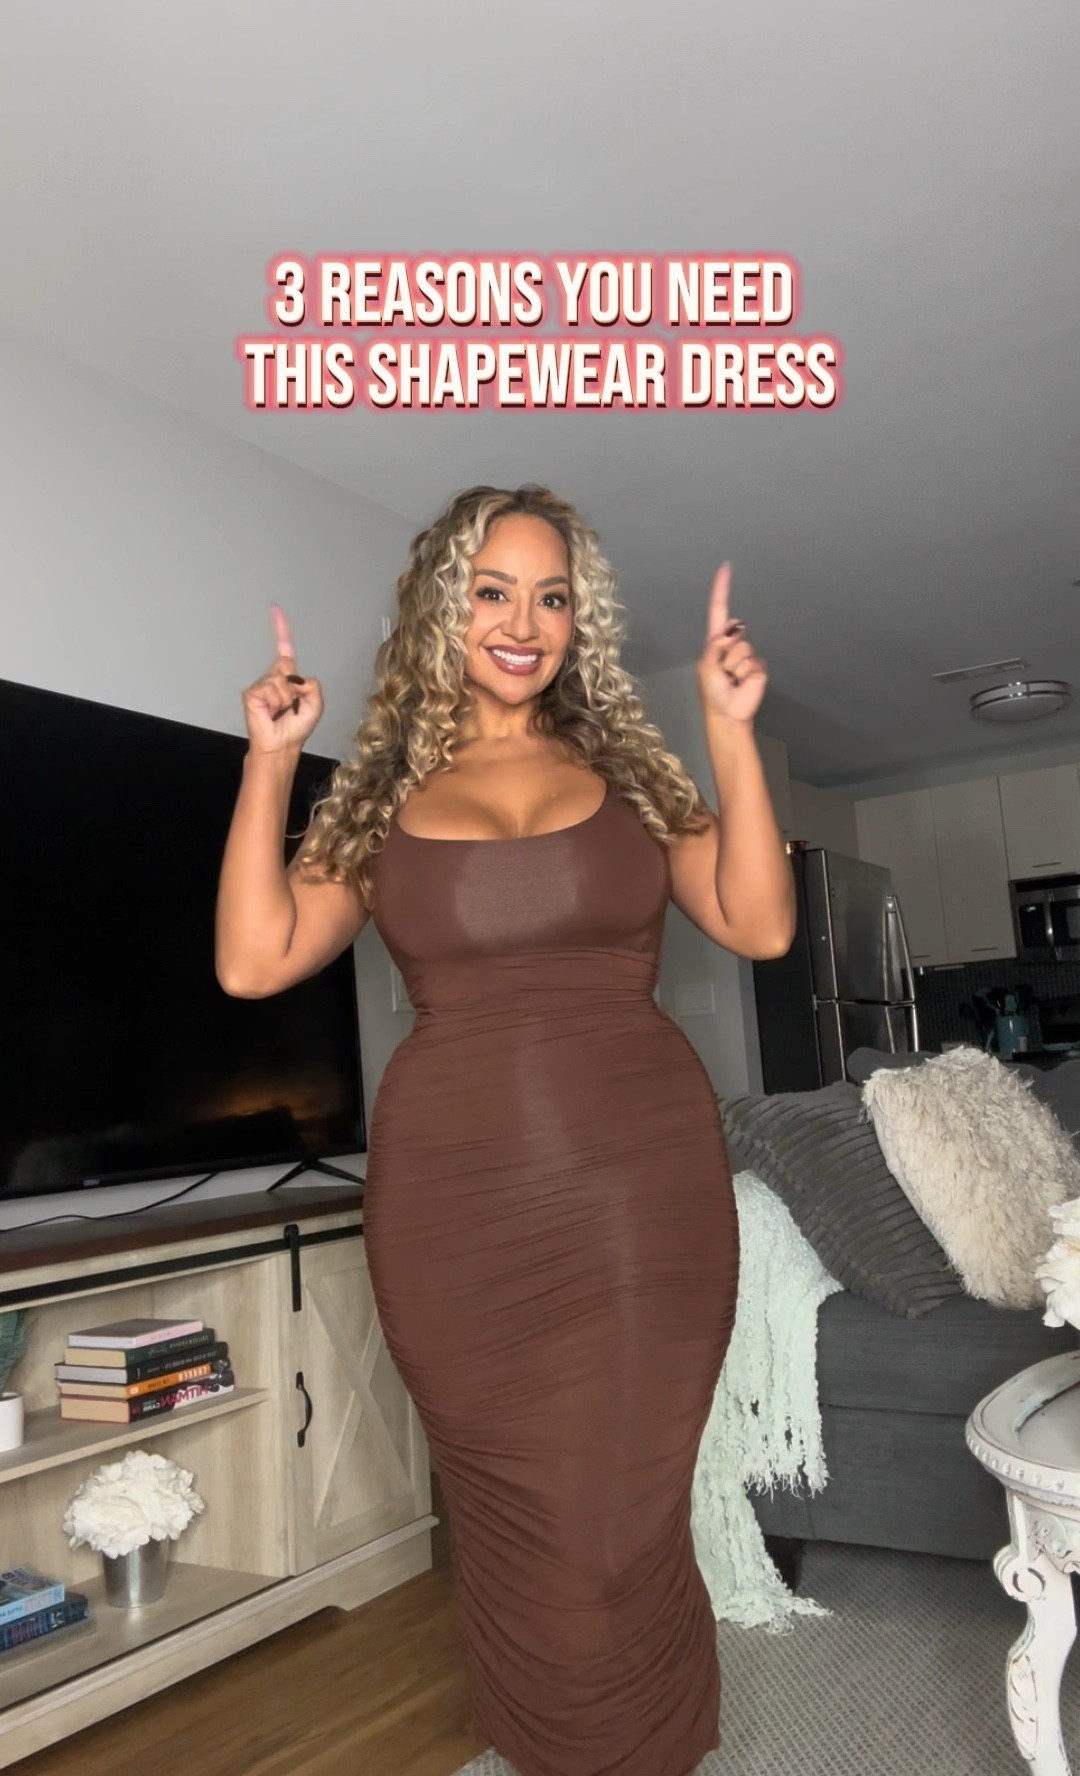 Shapellx Shapewear Dress [Video]